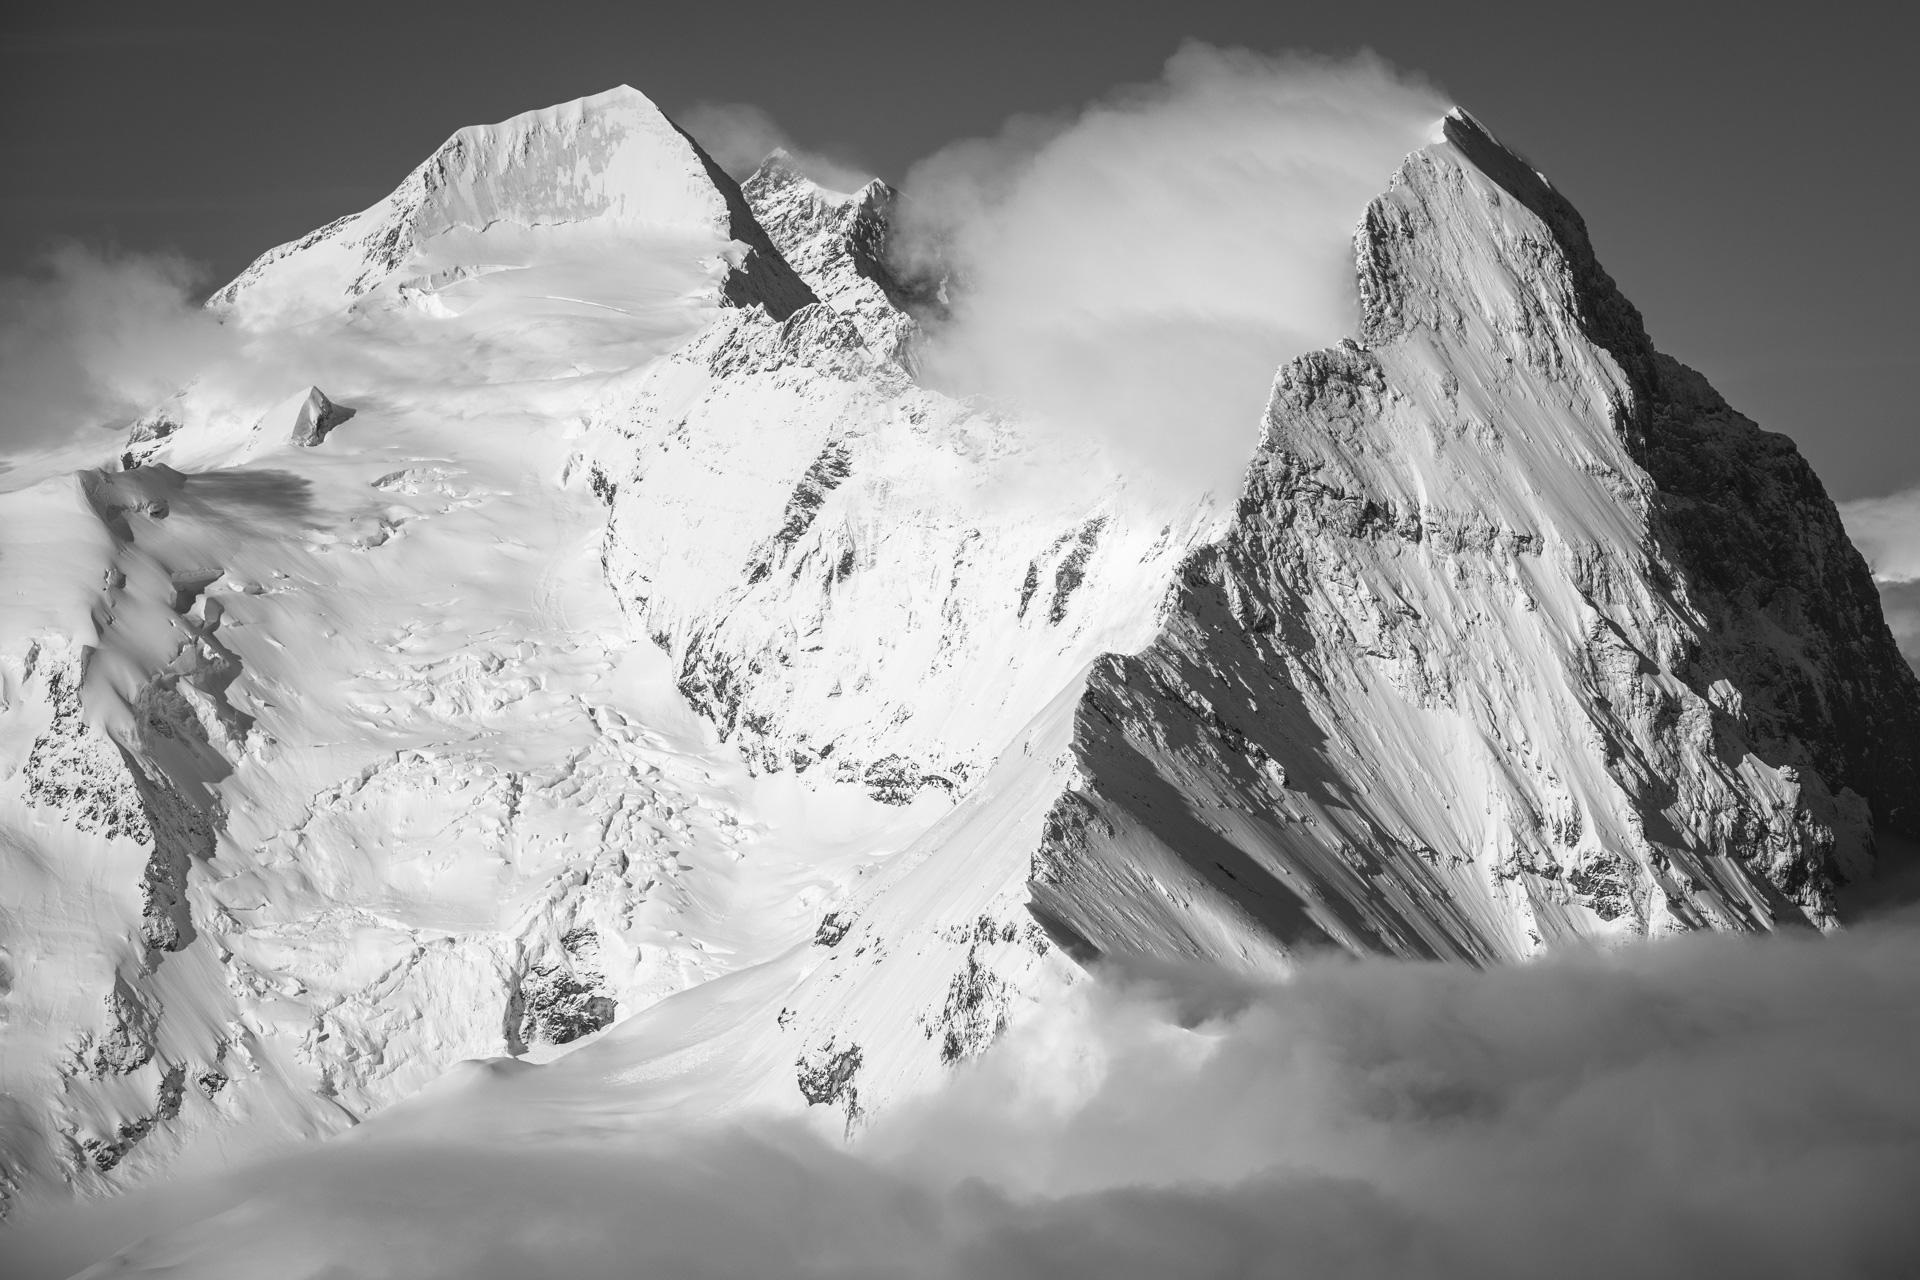 Monch - Eiger - Jungfrau - Wolkenmeer auf dem Gipfel eines Berges in den Schweizer Alpen in schwarz-weiß - grindelwald